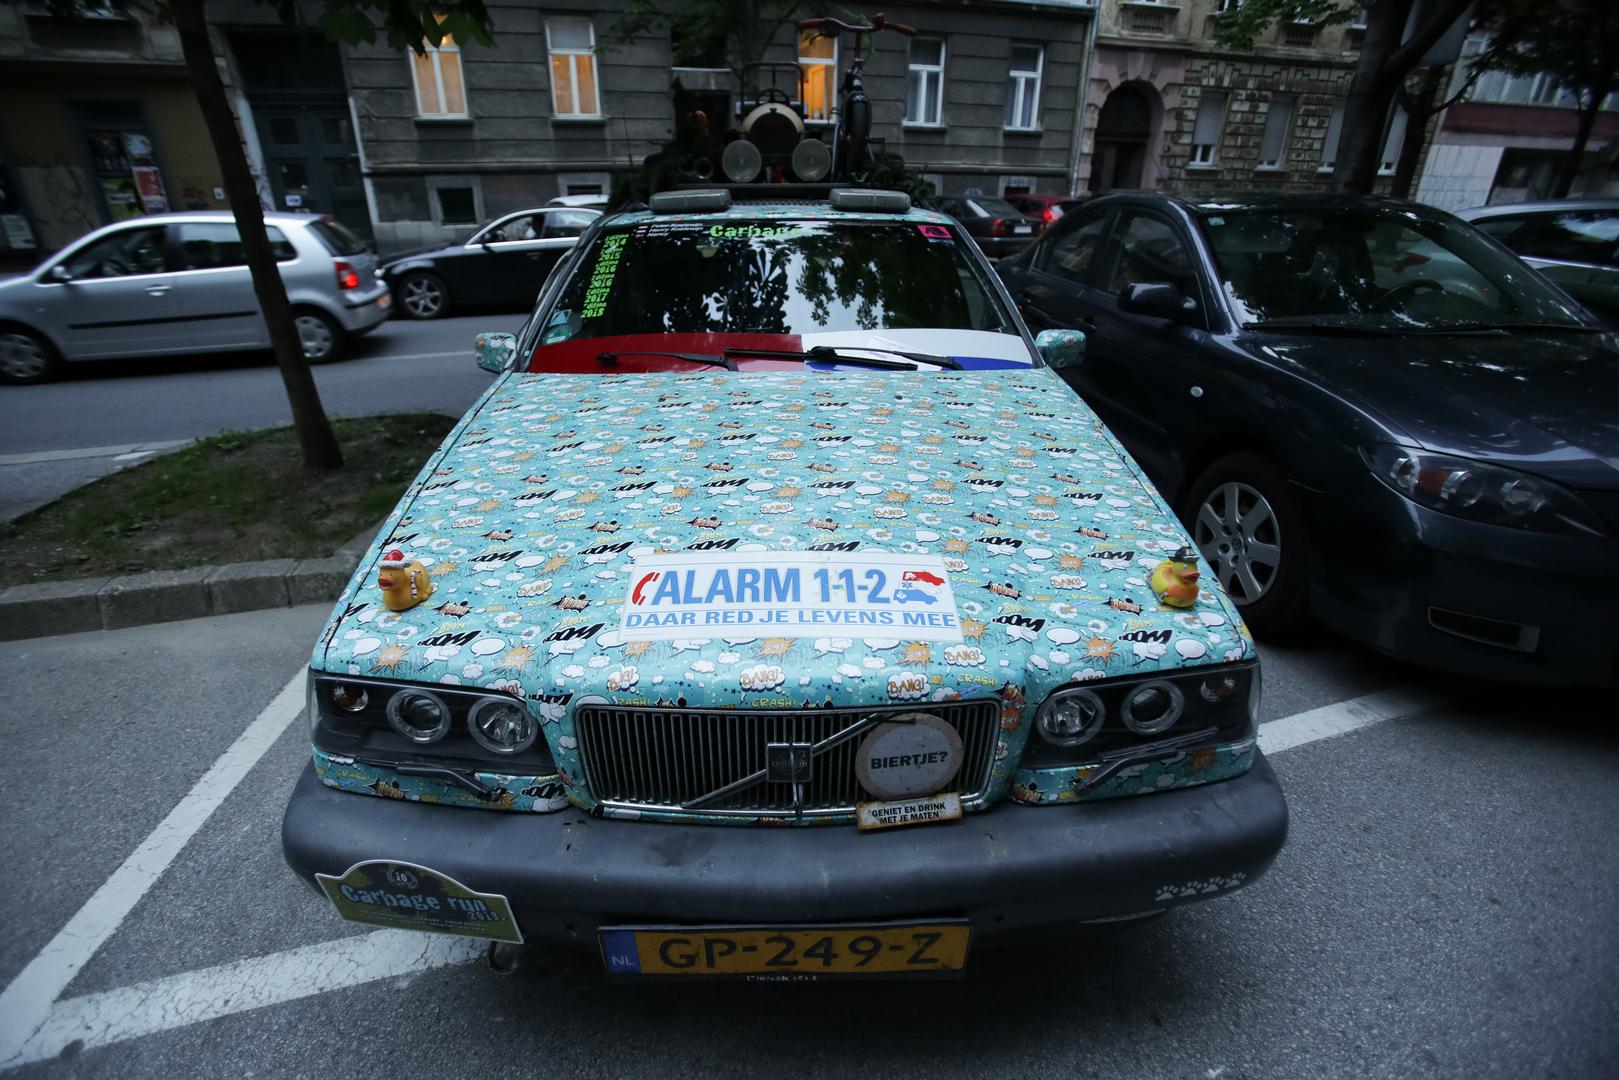 Skupina šarenih automobila nizozemskih tablica našla se danas u Deželićevoj ulici u Zagrebu.